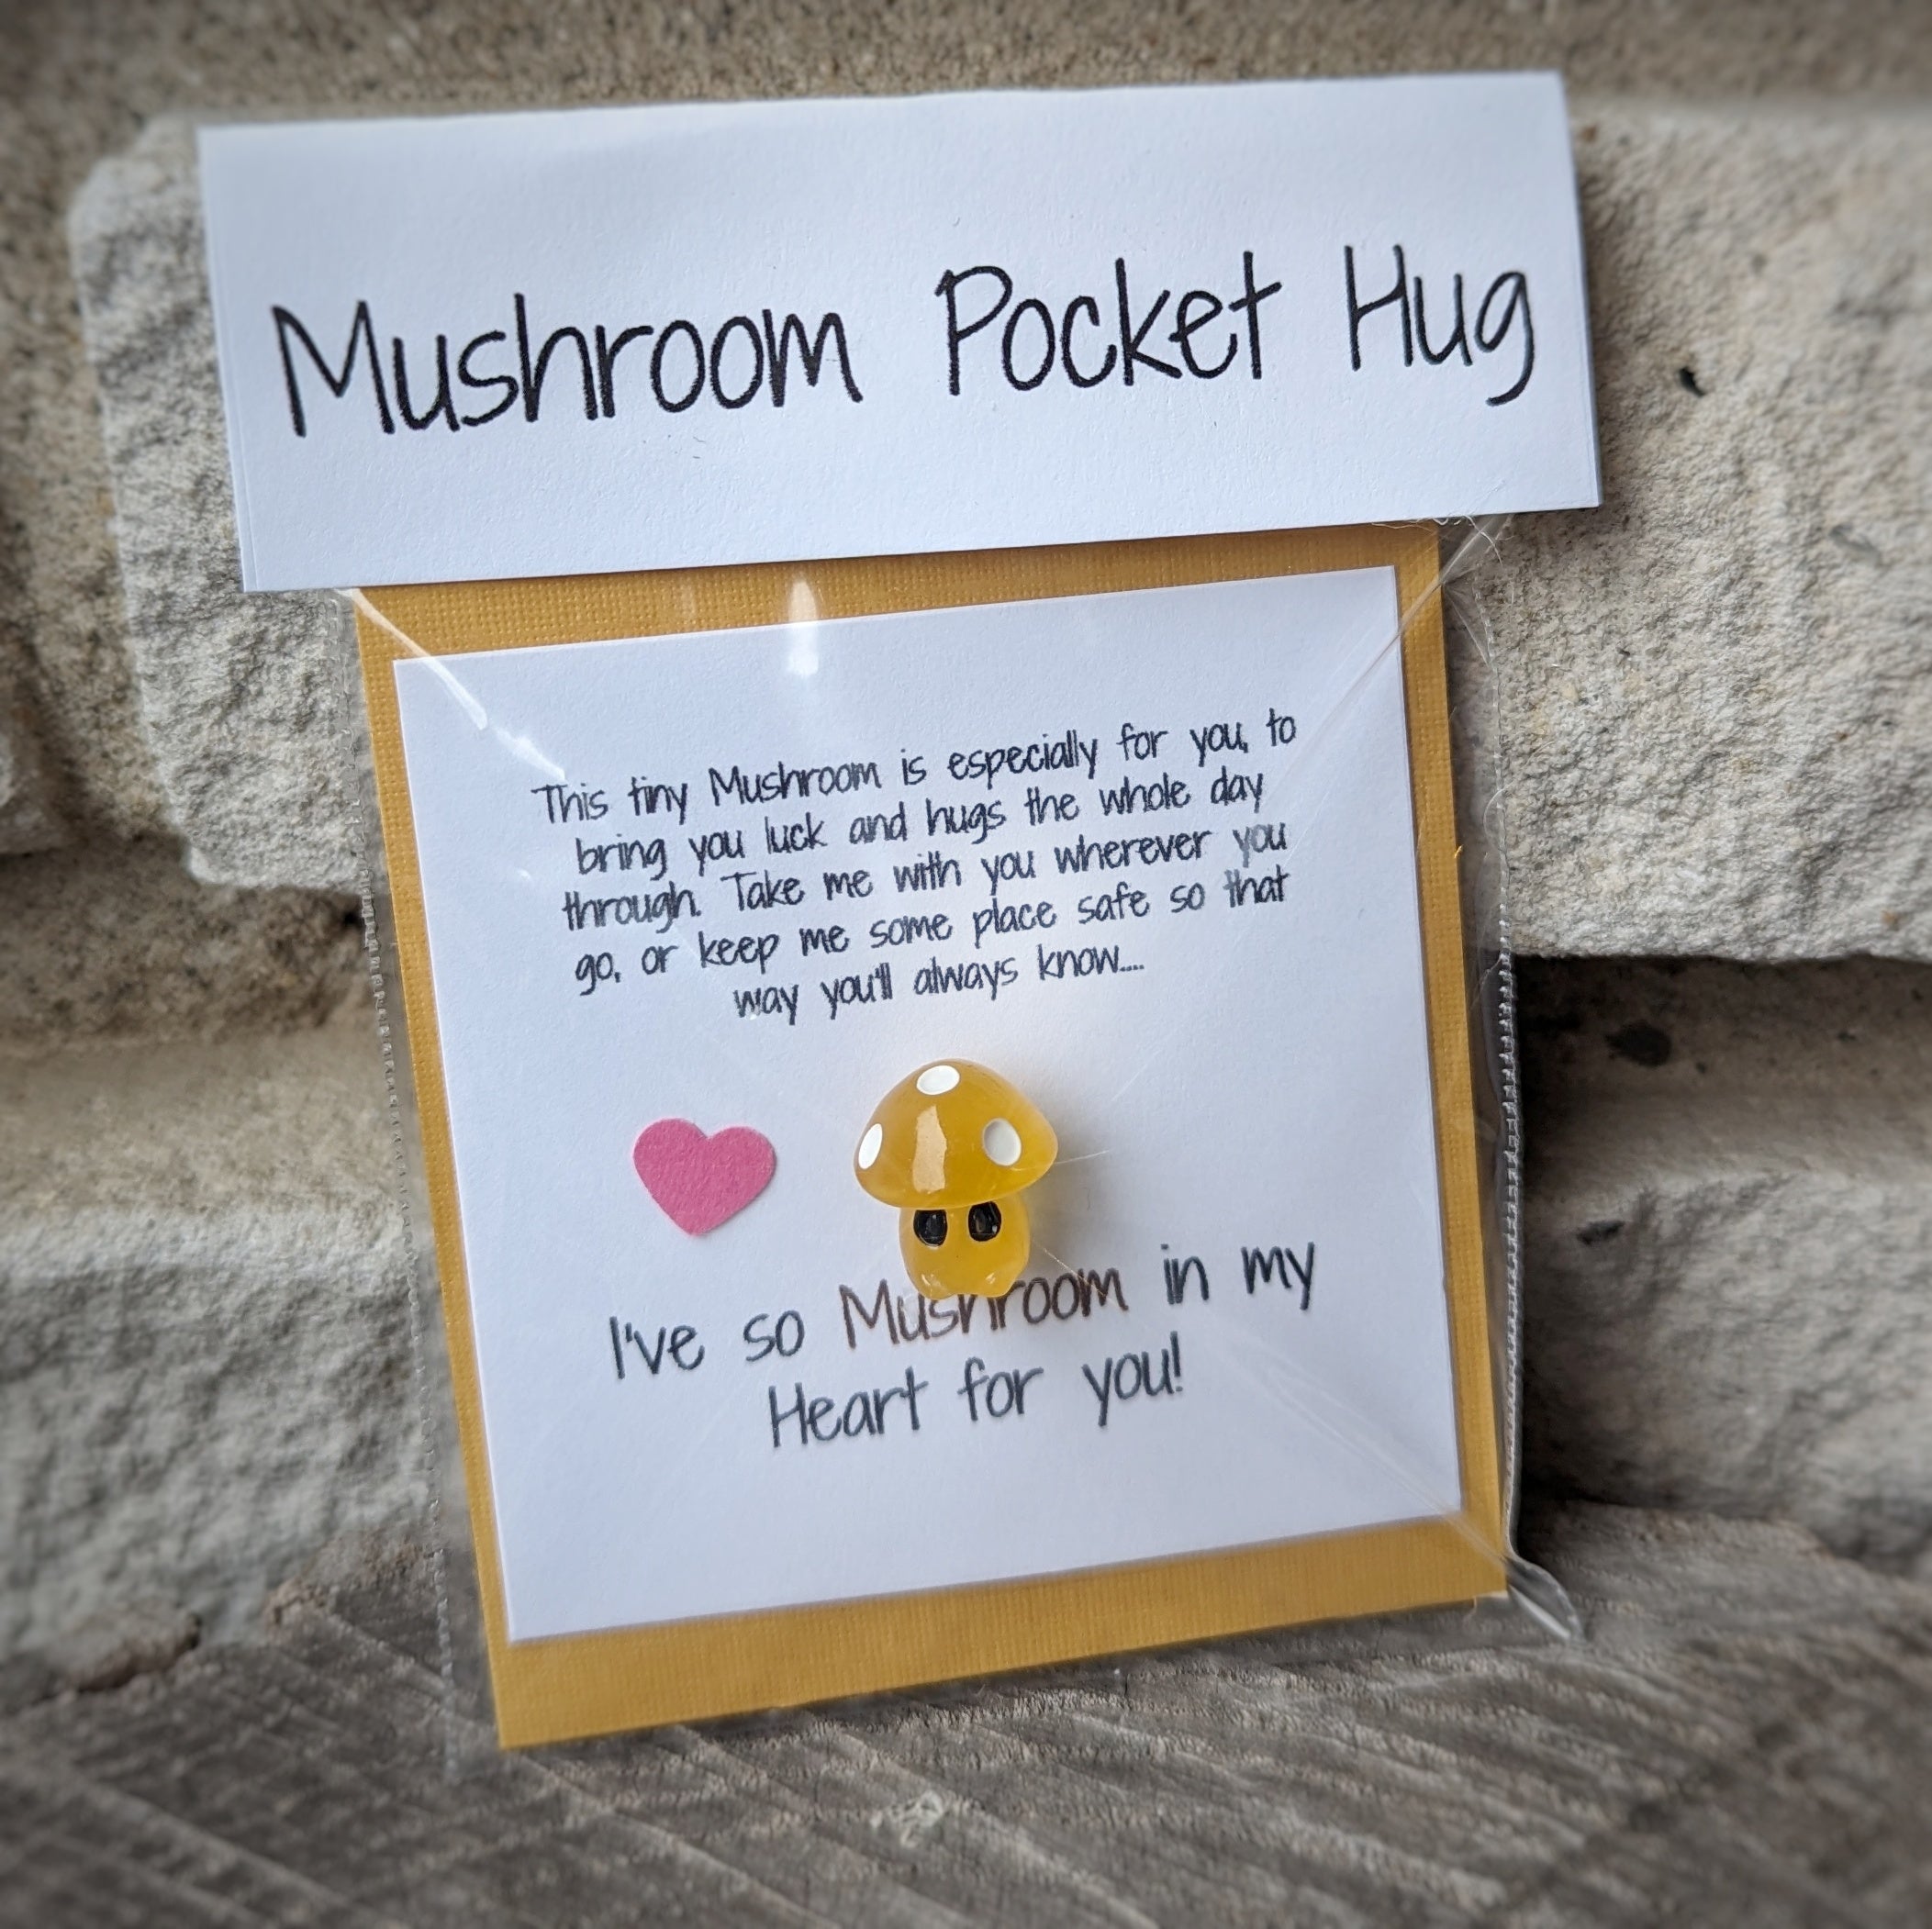 Pocket Hug Mushroom